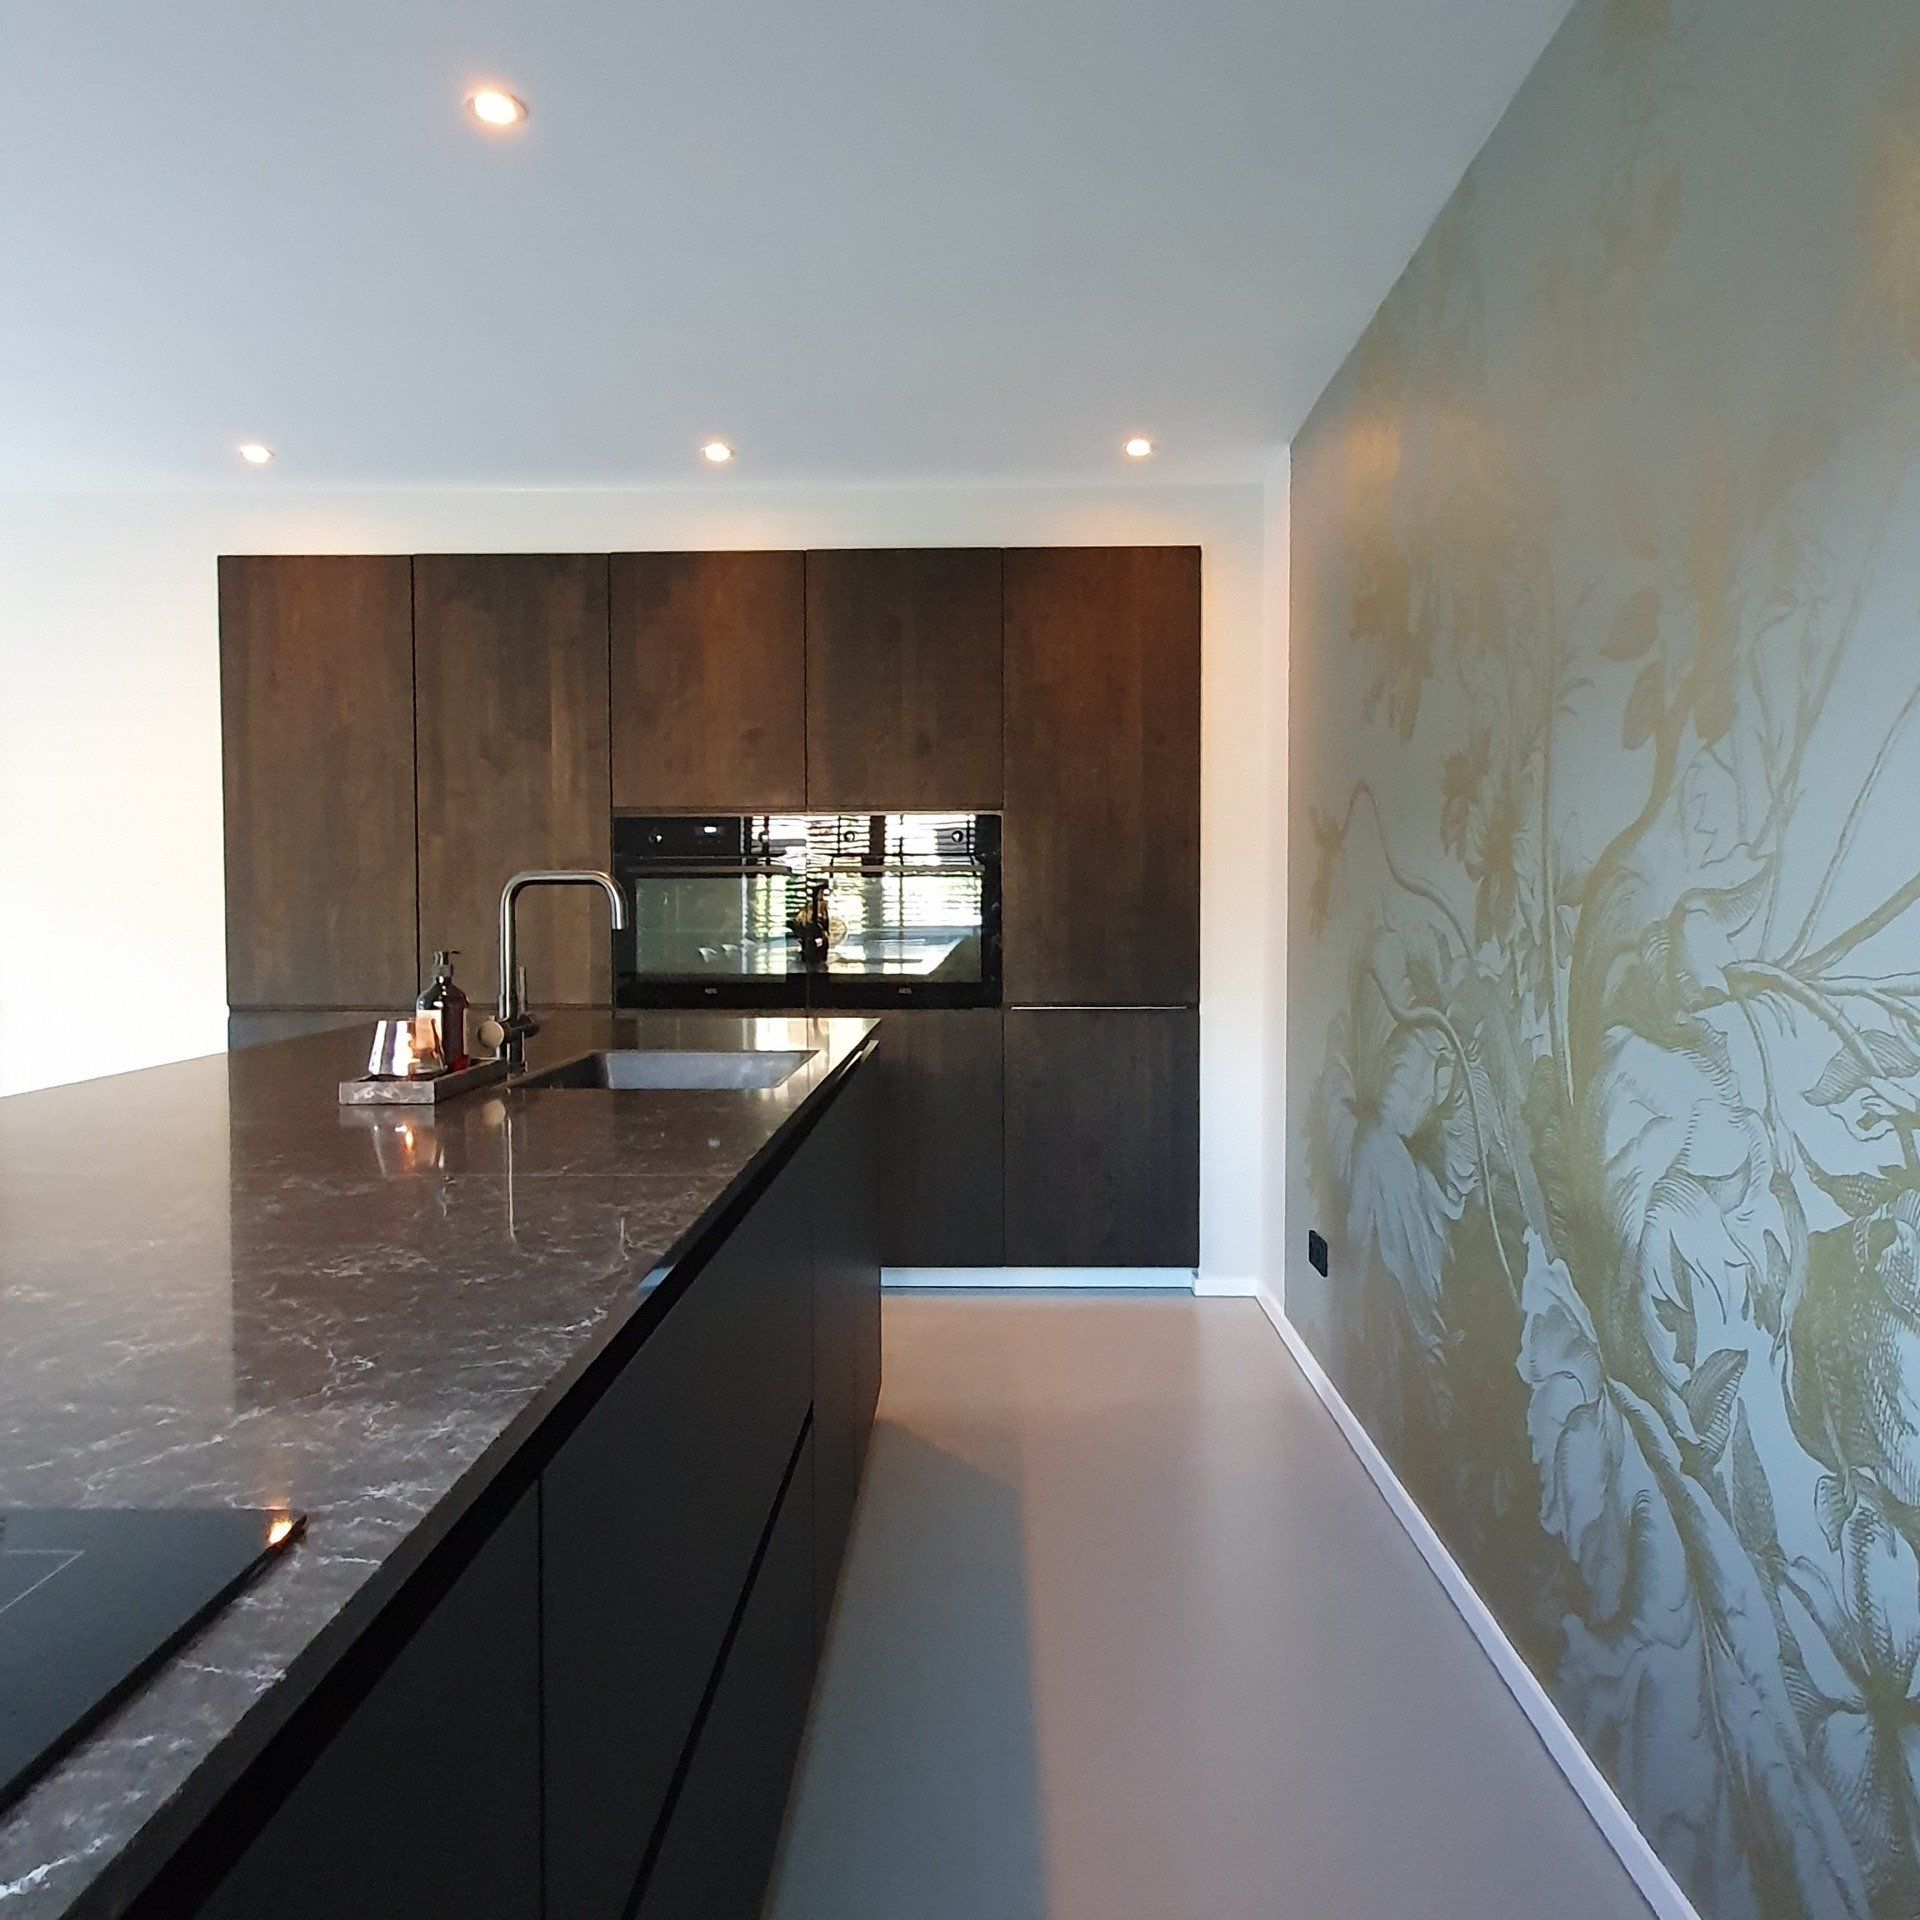 Maatwerk keuken ontworpen door SunStyling.